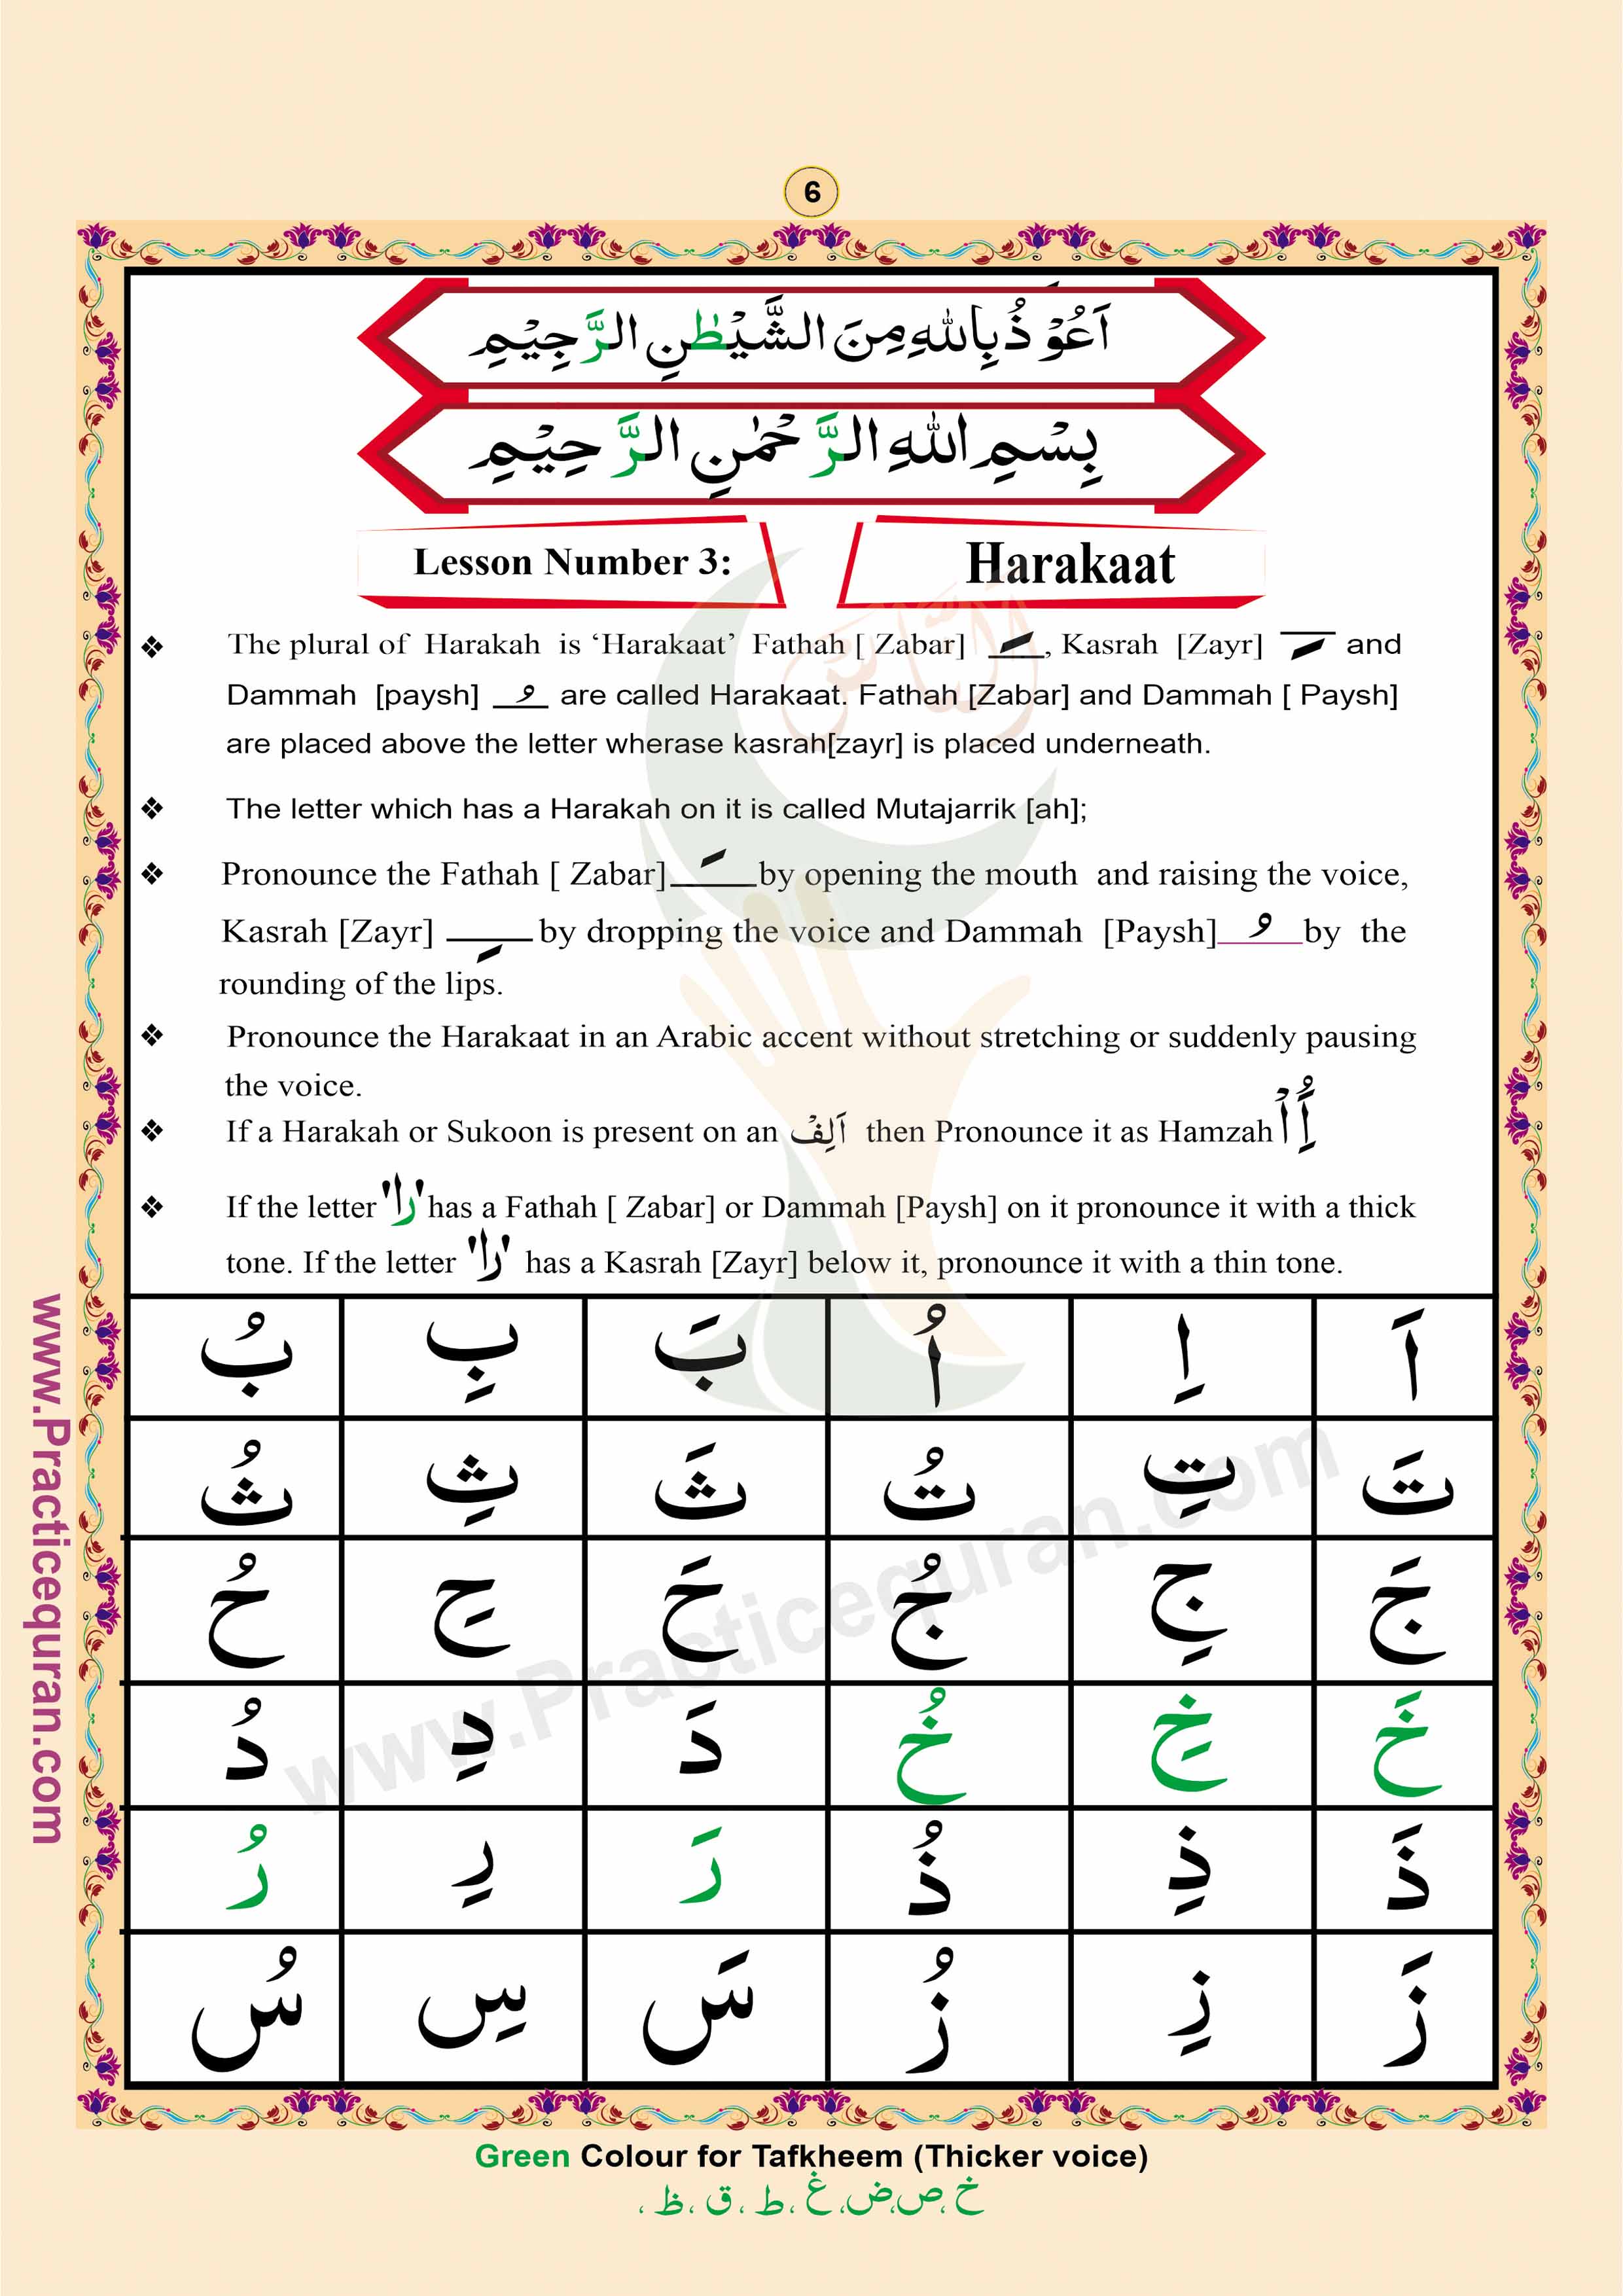 Read English Noorani Qaidah Page No 6, Practice Quran